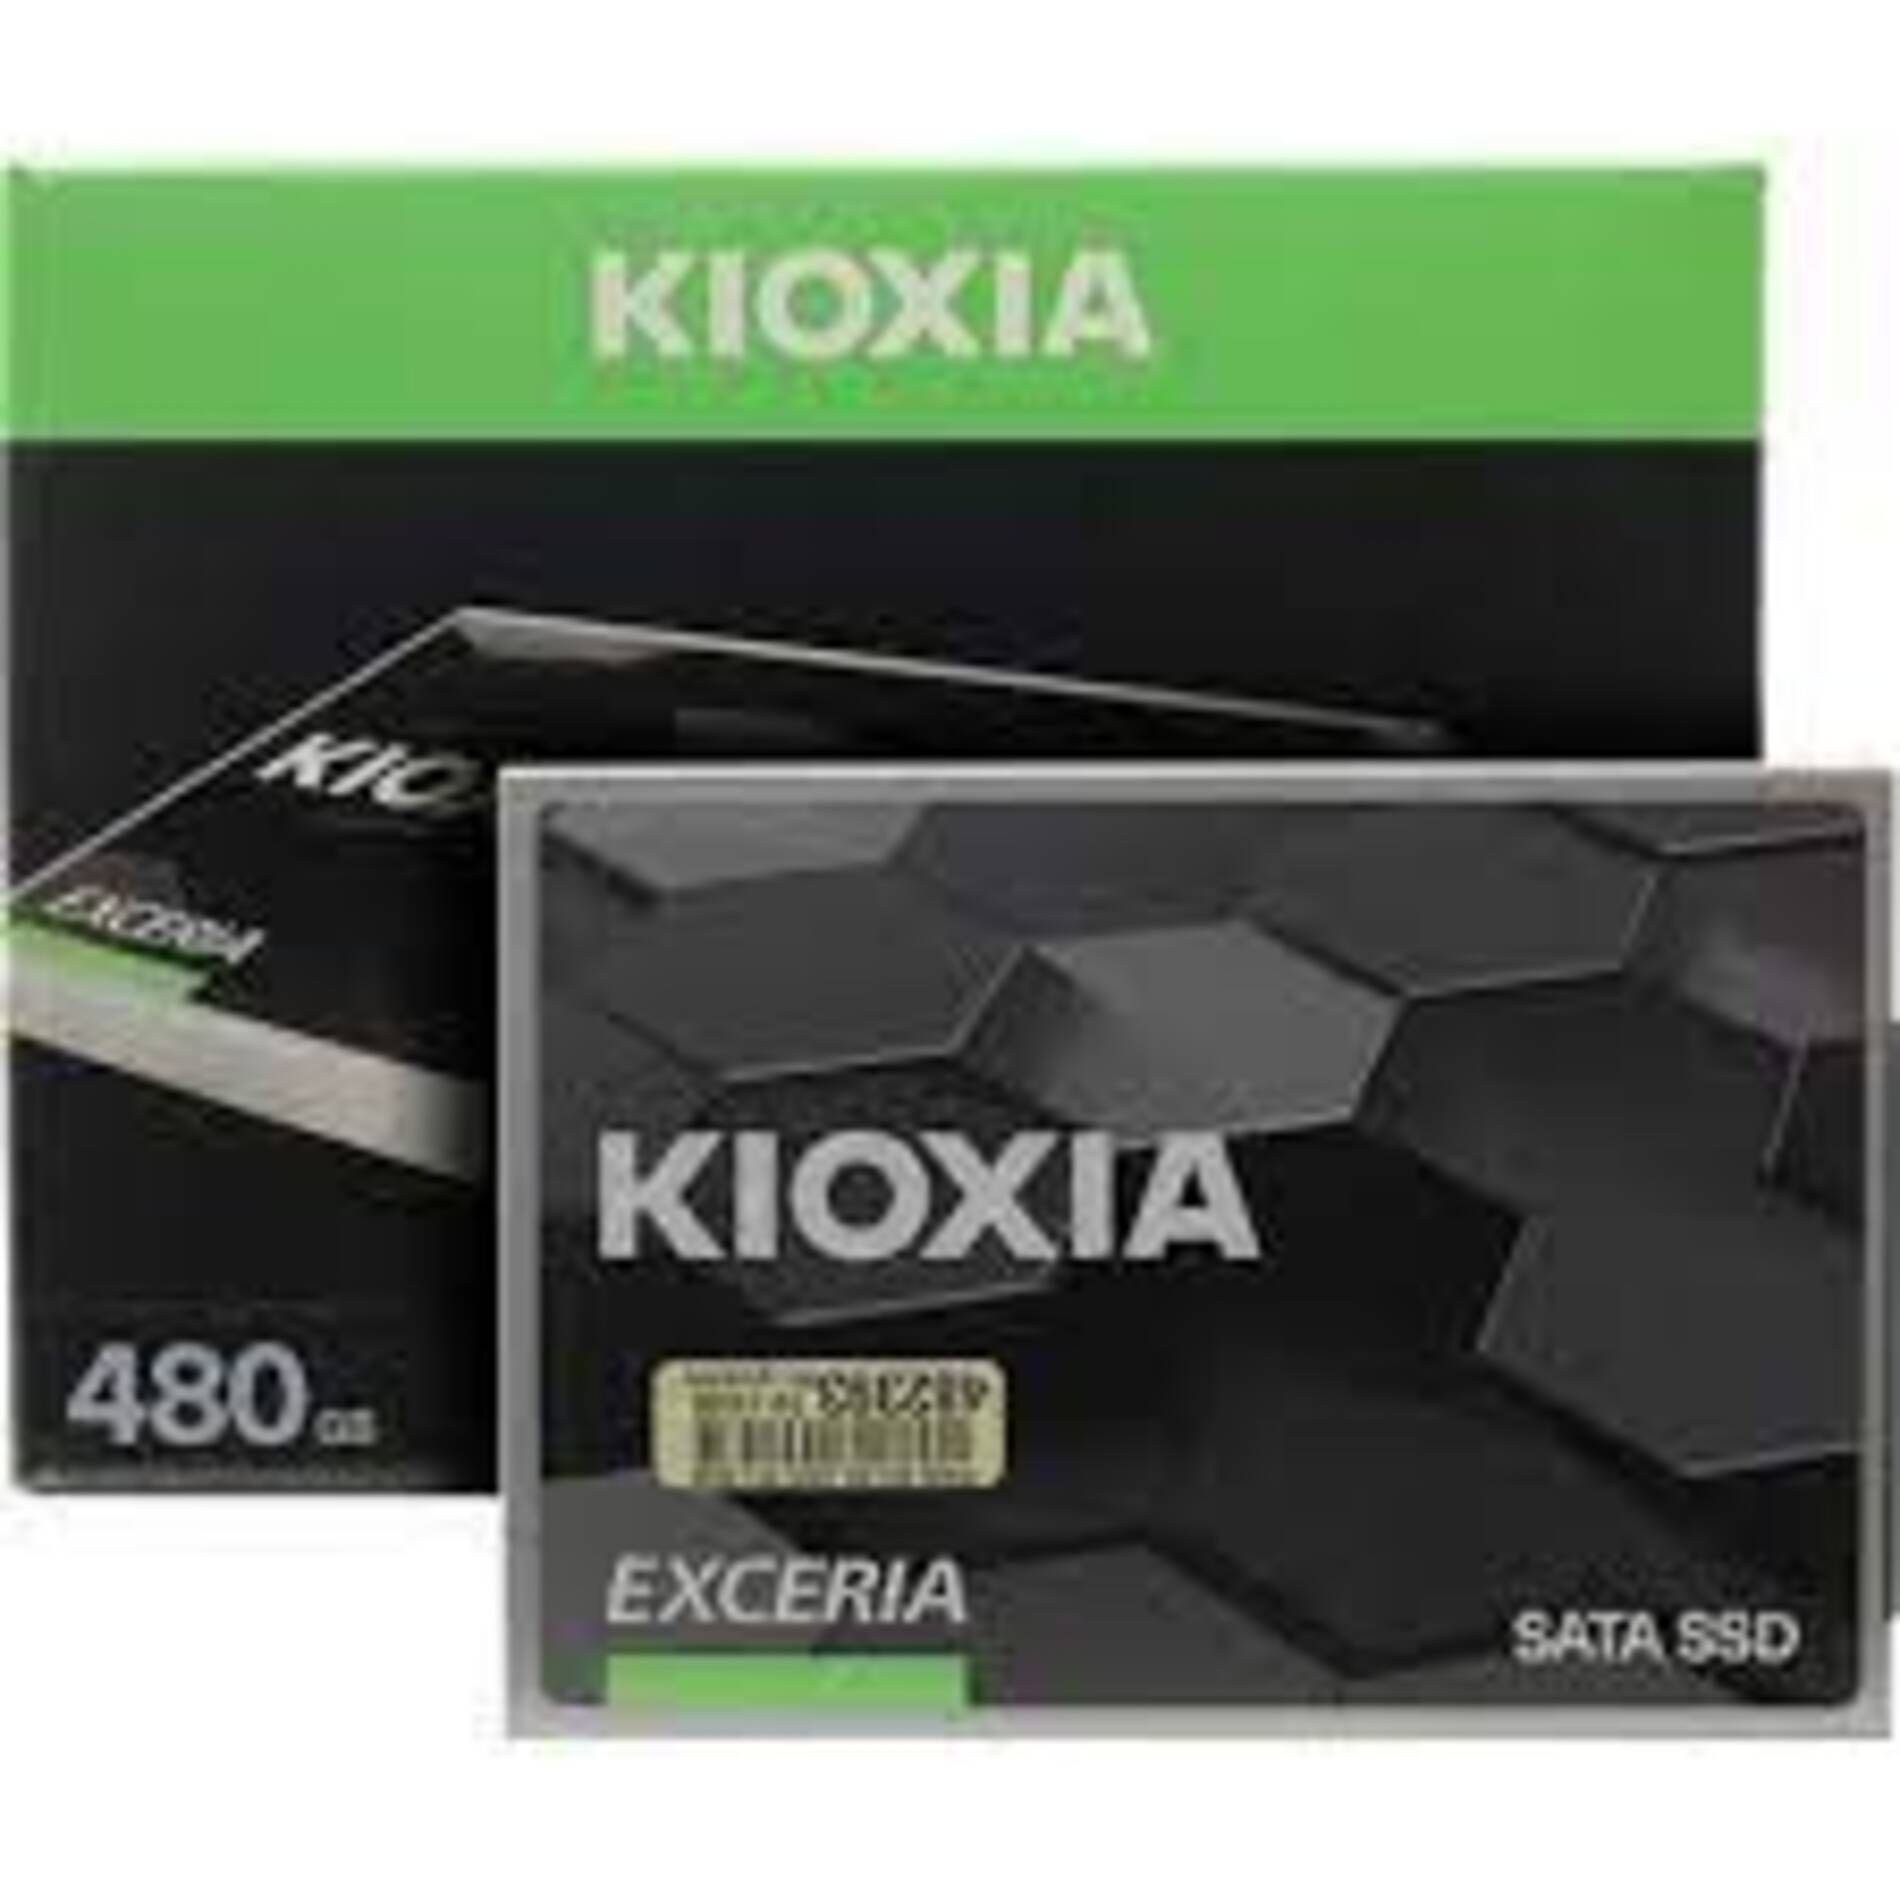 Kioxia планує випуск 3D NAND з 1000 шарами до 2027 року